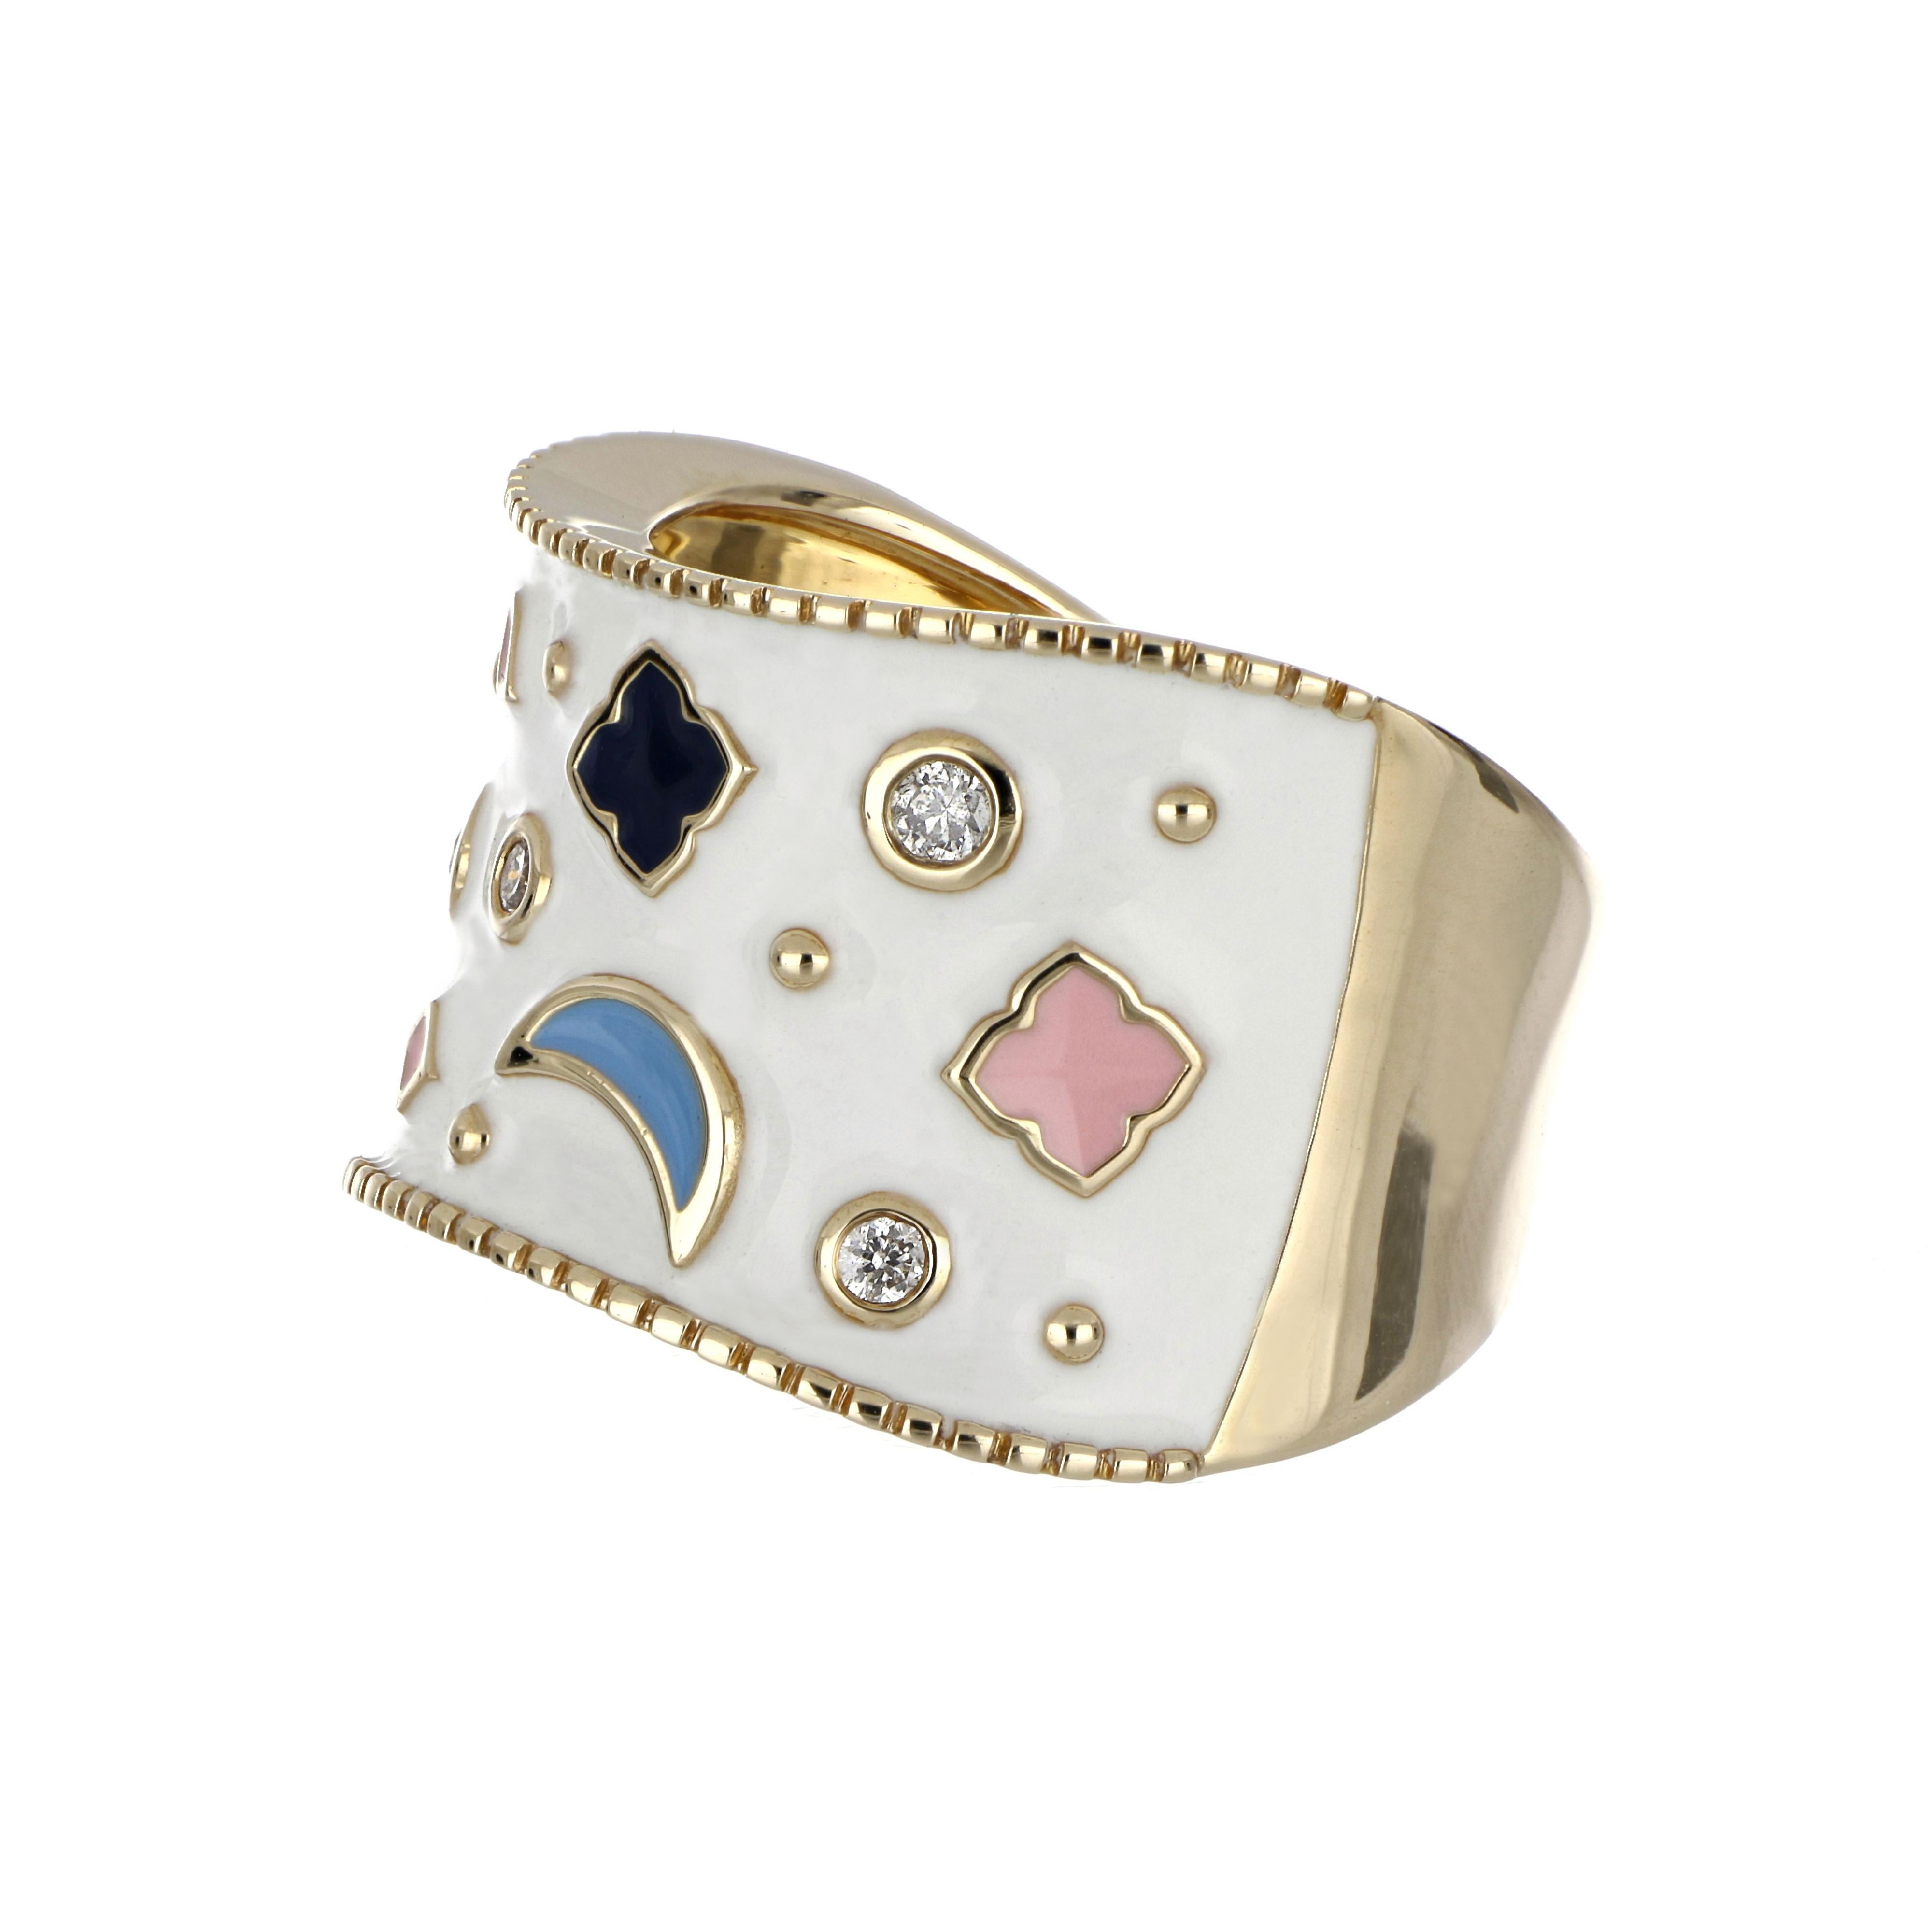 Elegant und exquisit detaillierte Multi Color Emaille Cocktail 14 K Ring,  akzentuiert mit Diamanten, Gewicht ca. 0,11 Karat. Wunderschön handgefertigt in 14 Karat Gelbgold.


Diamanten: GH-SI 

Ungefähr. Gewicht: 0,11 Karat.

Ringgröße: US 7